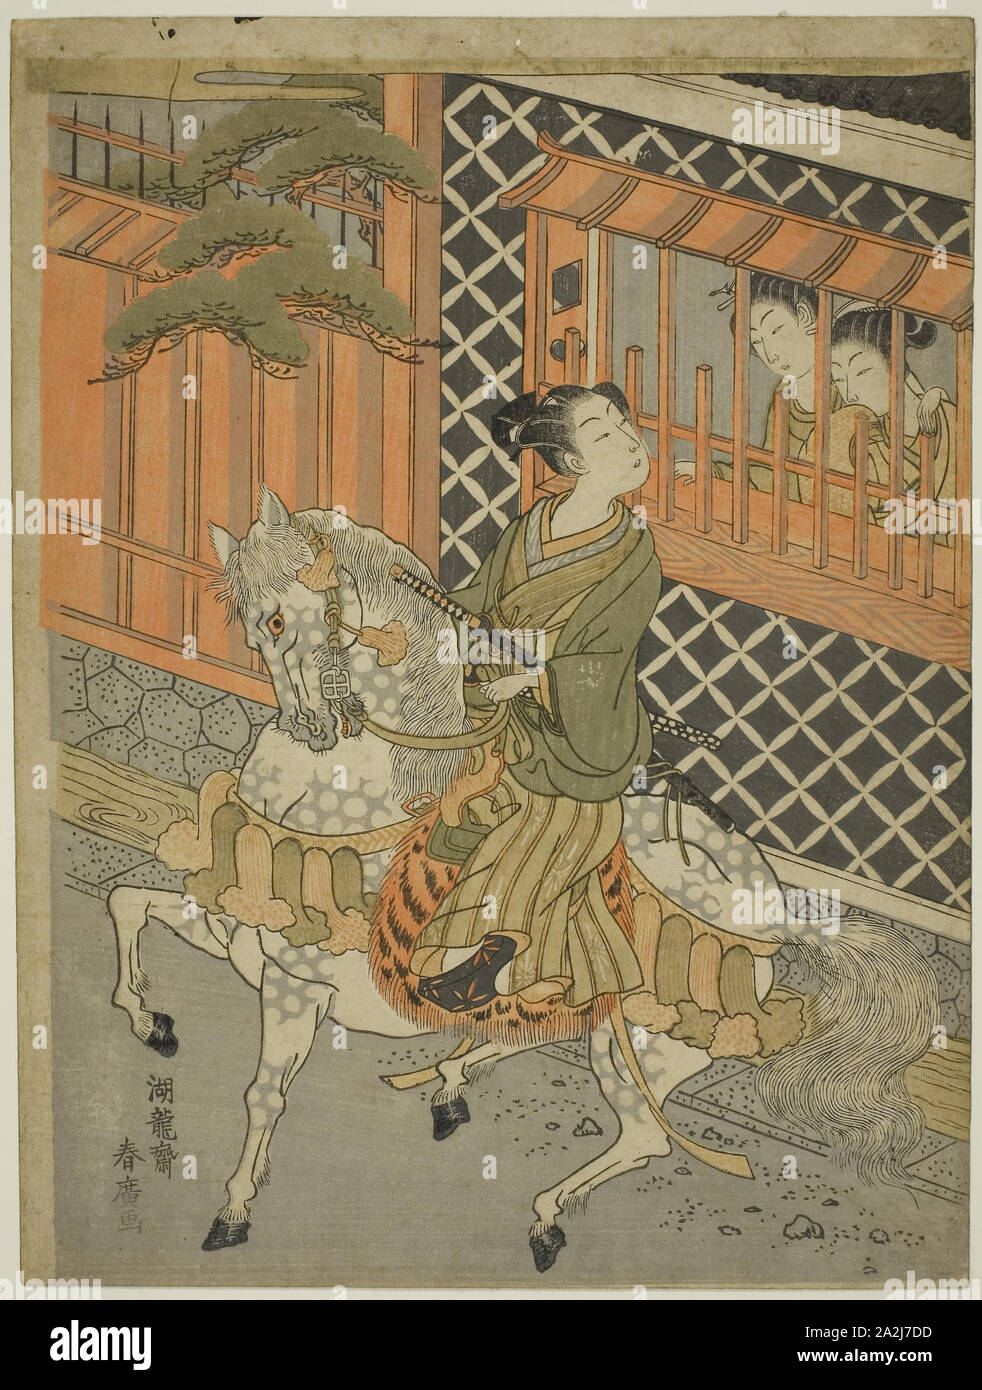 Jeune Samouraï à cheval, c. 1769/70, Isoda Koryusai, Japonais, 1735-1790, le Japon, la couleur, estampe chuban, 11 3/8 x 8 1/4 in Banque D'Images